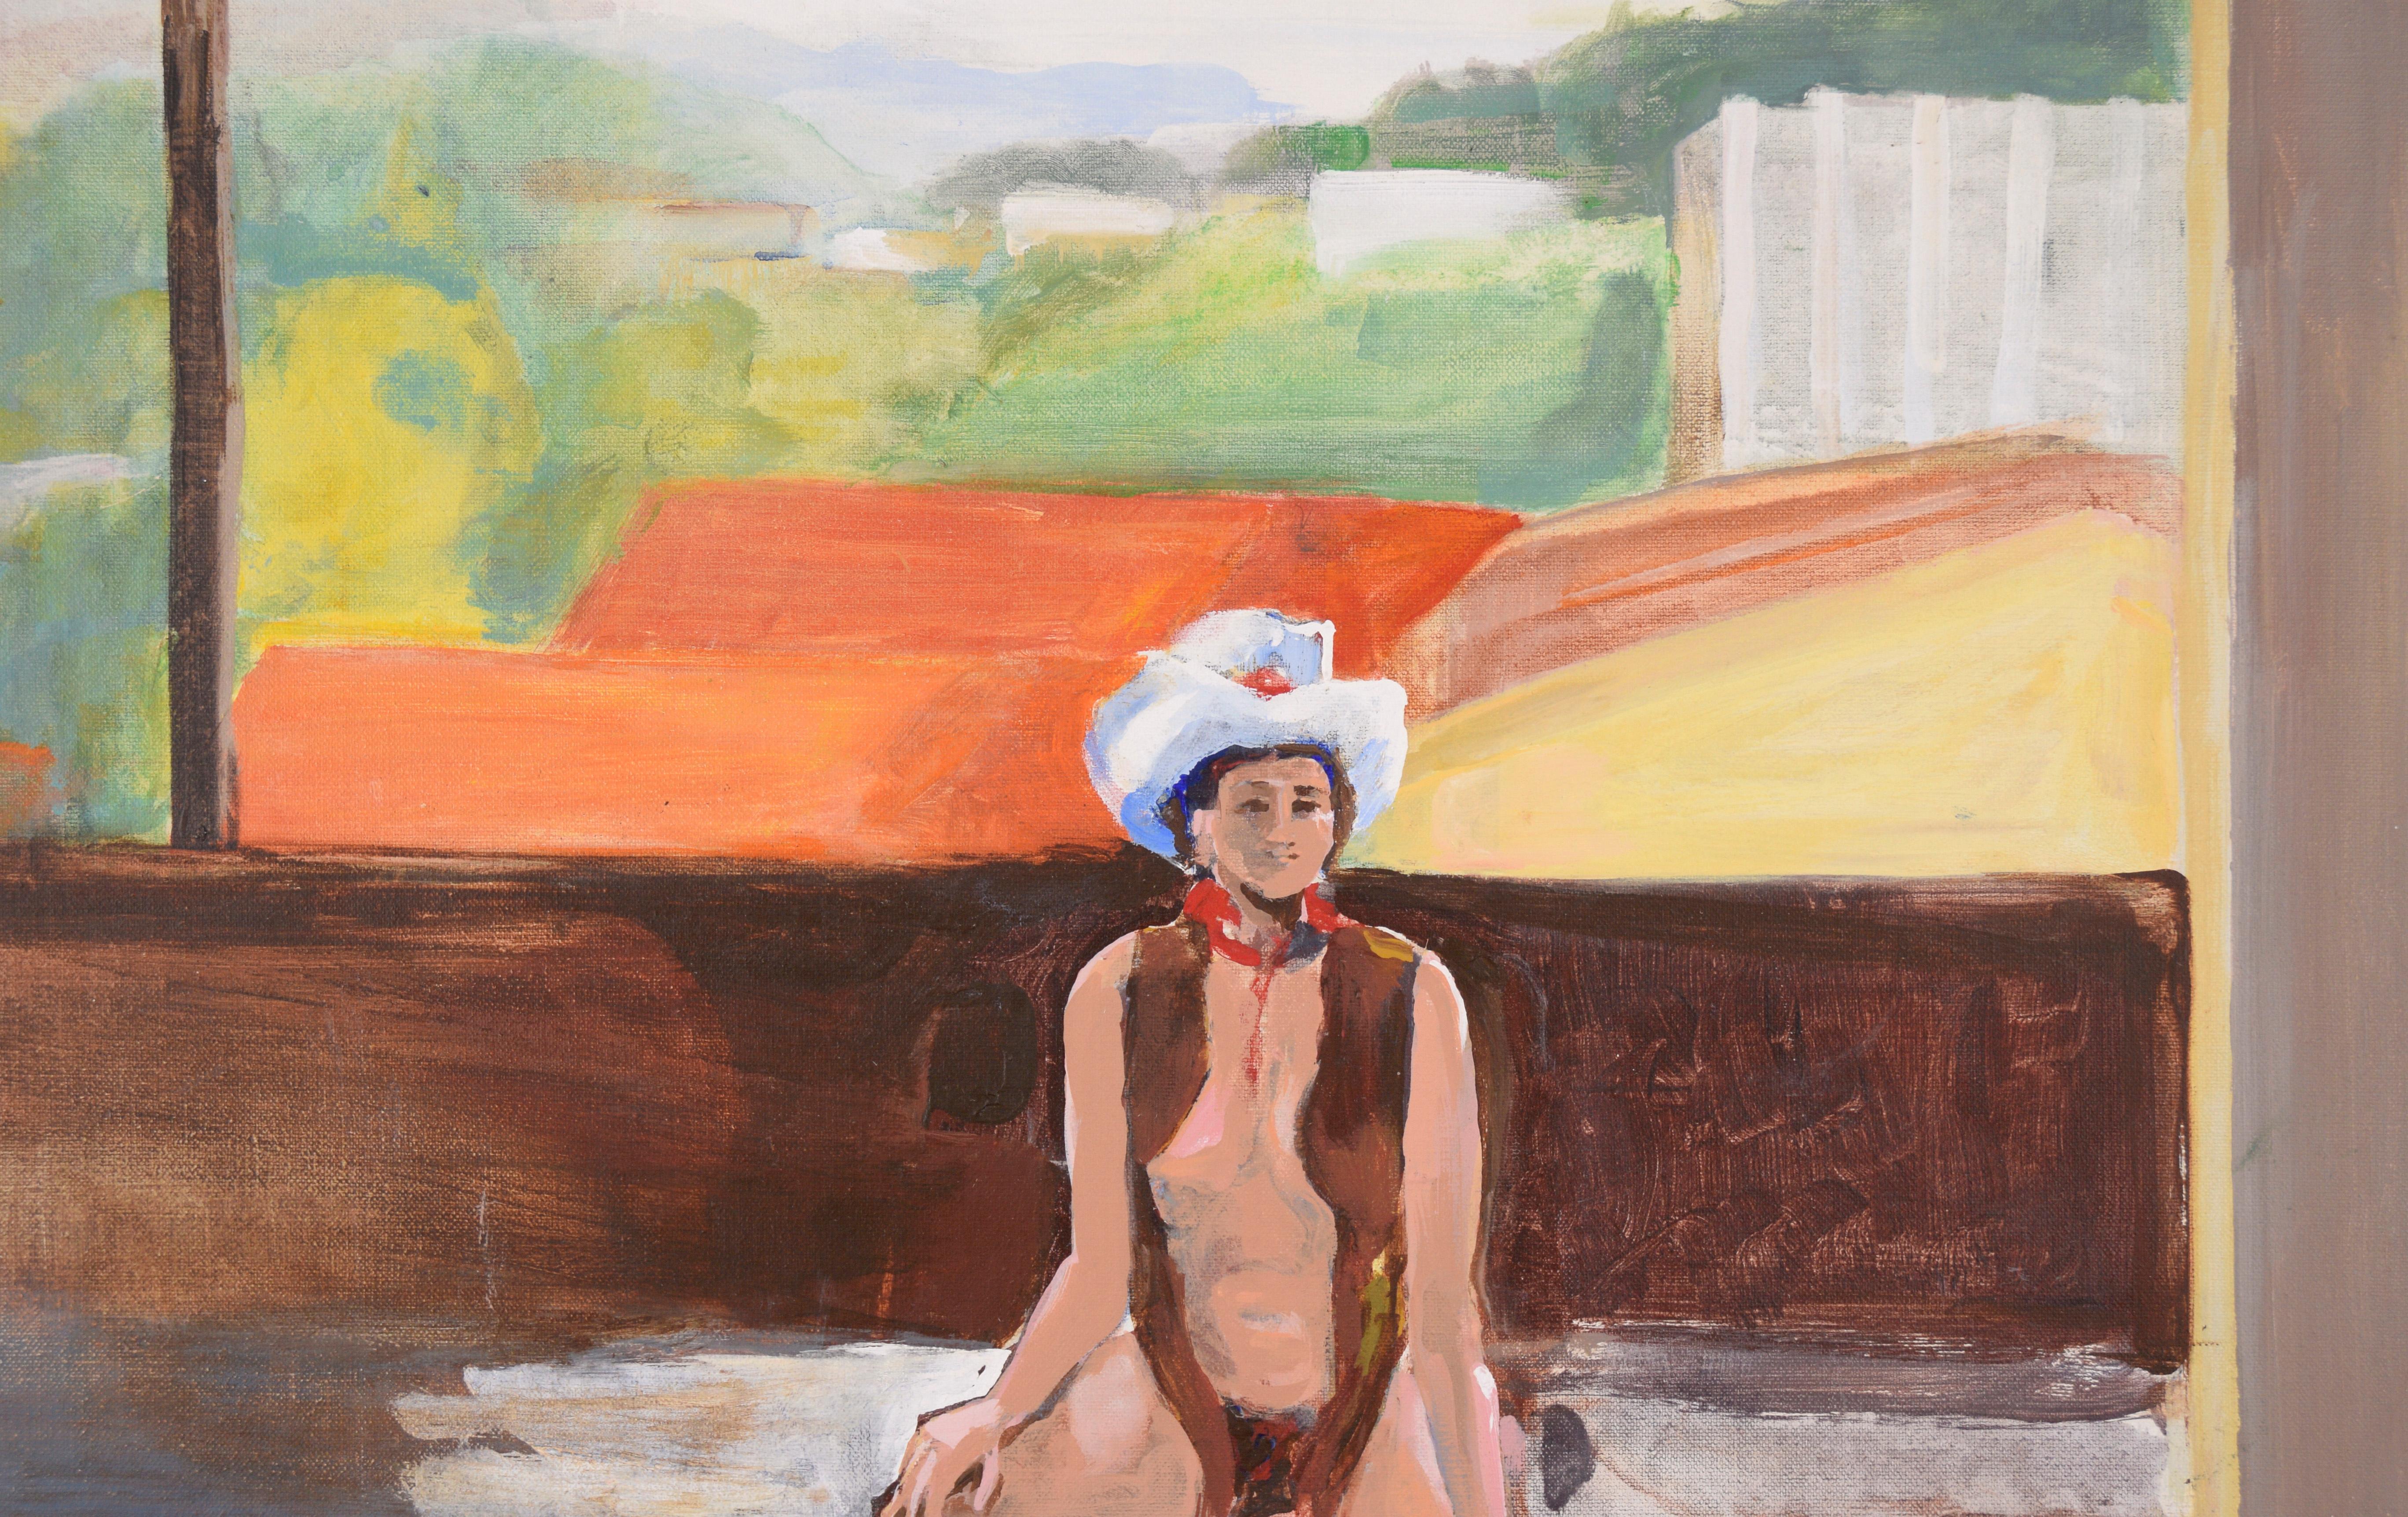 Cowgirl in the Studio - Étude figurative à l'huile sur toile

Une femme vêtue d'un gilet, d'un chapeau de cow-boy et de bottes, par la peintre américaine Patricia Gren Hayes (née en 1932). Le modèle est assis sur un tabouret dans un grand studio